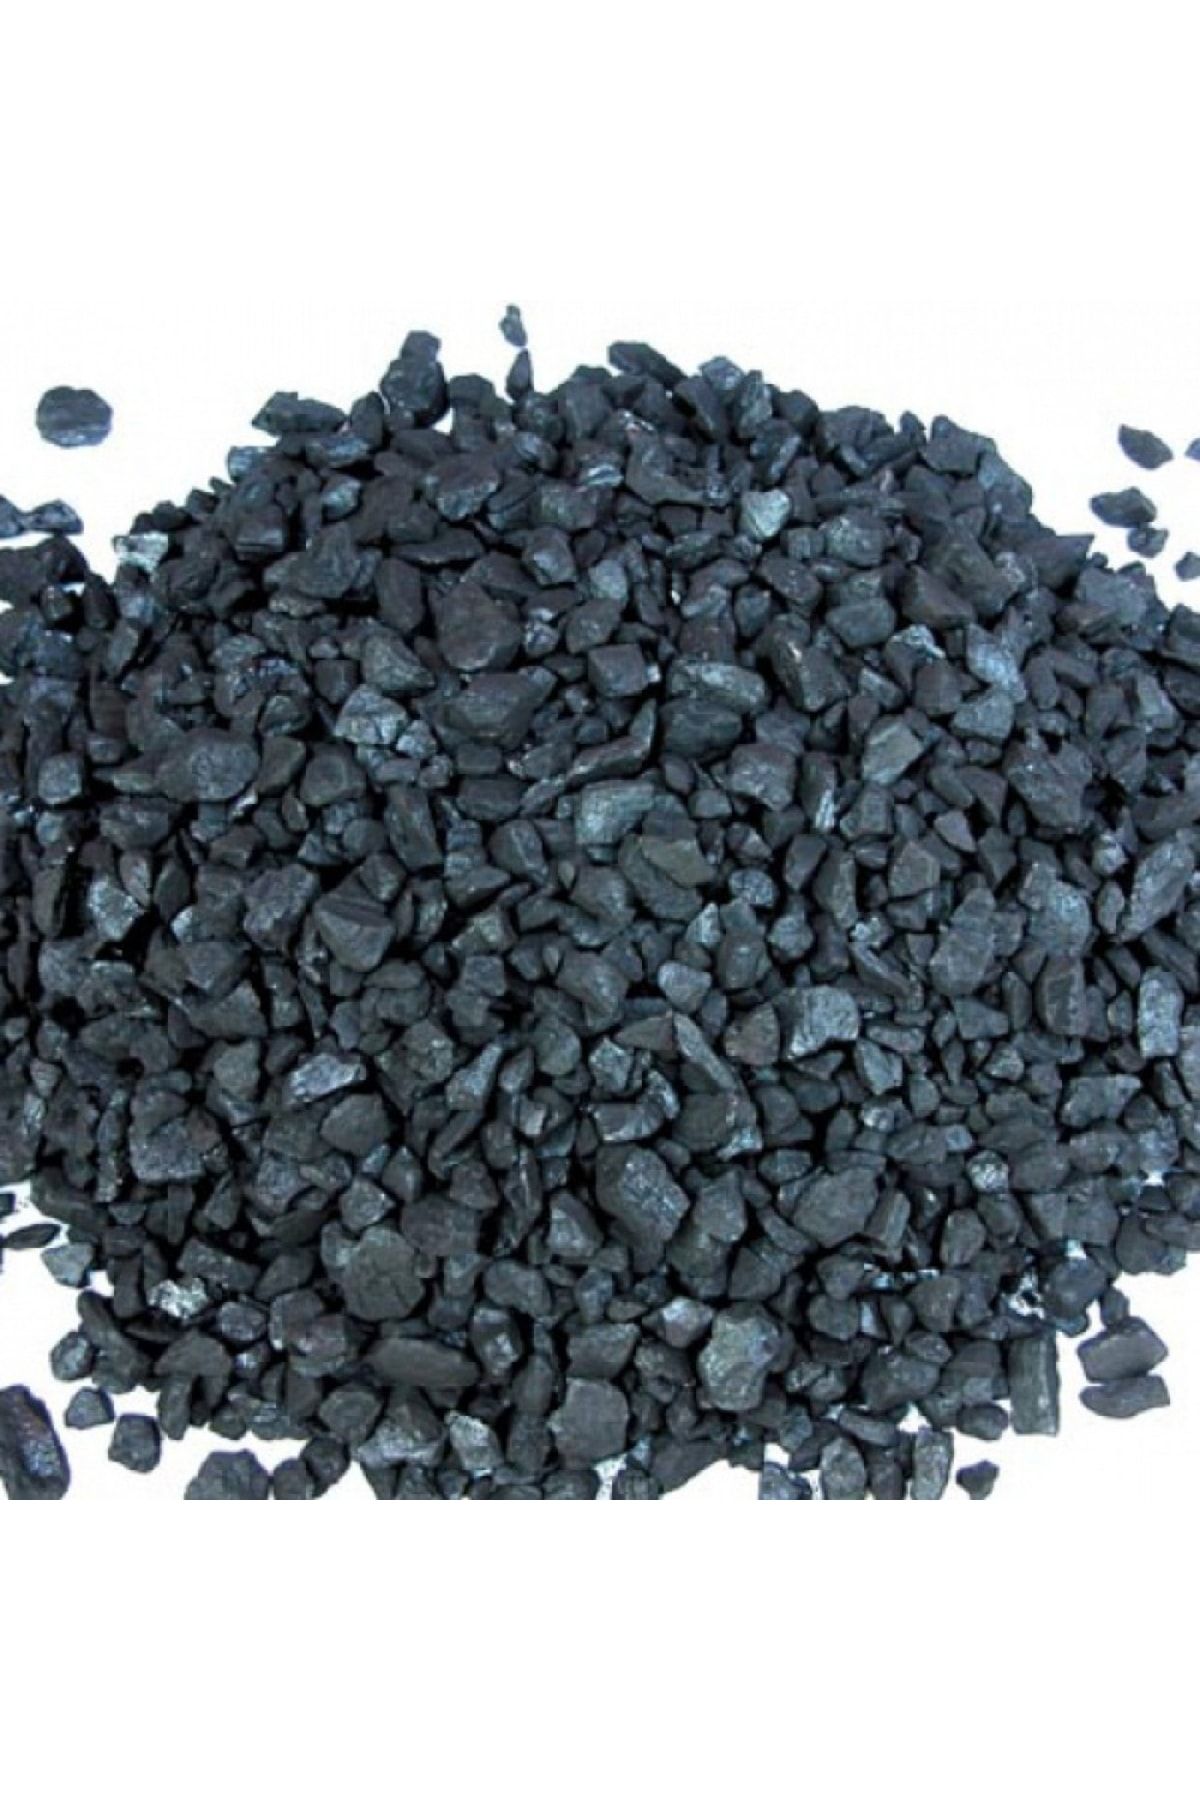 CEREN MANGAL Zonguldak Taş Kömürü 6800-7000 Kcal Soba Ve Kalorifer Kömürü 25 Kg (1 Çuval)